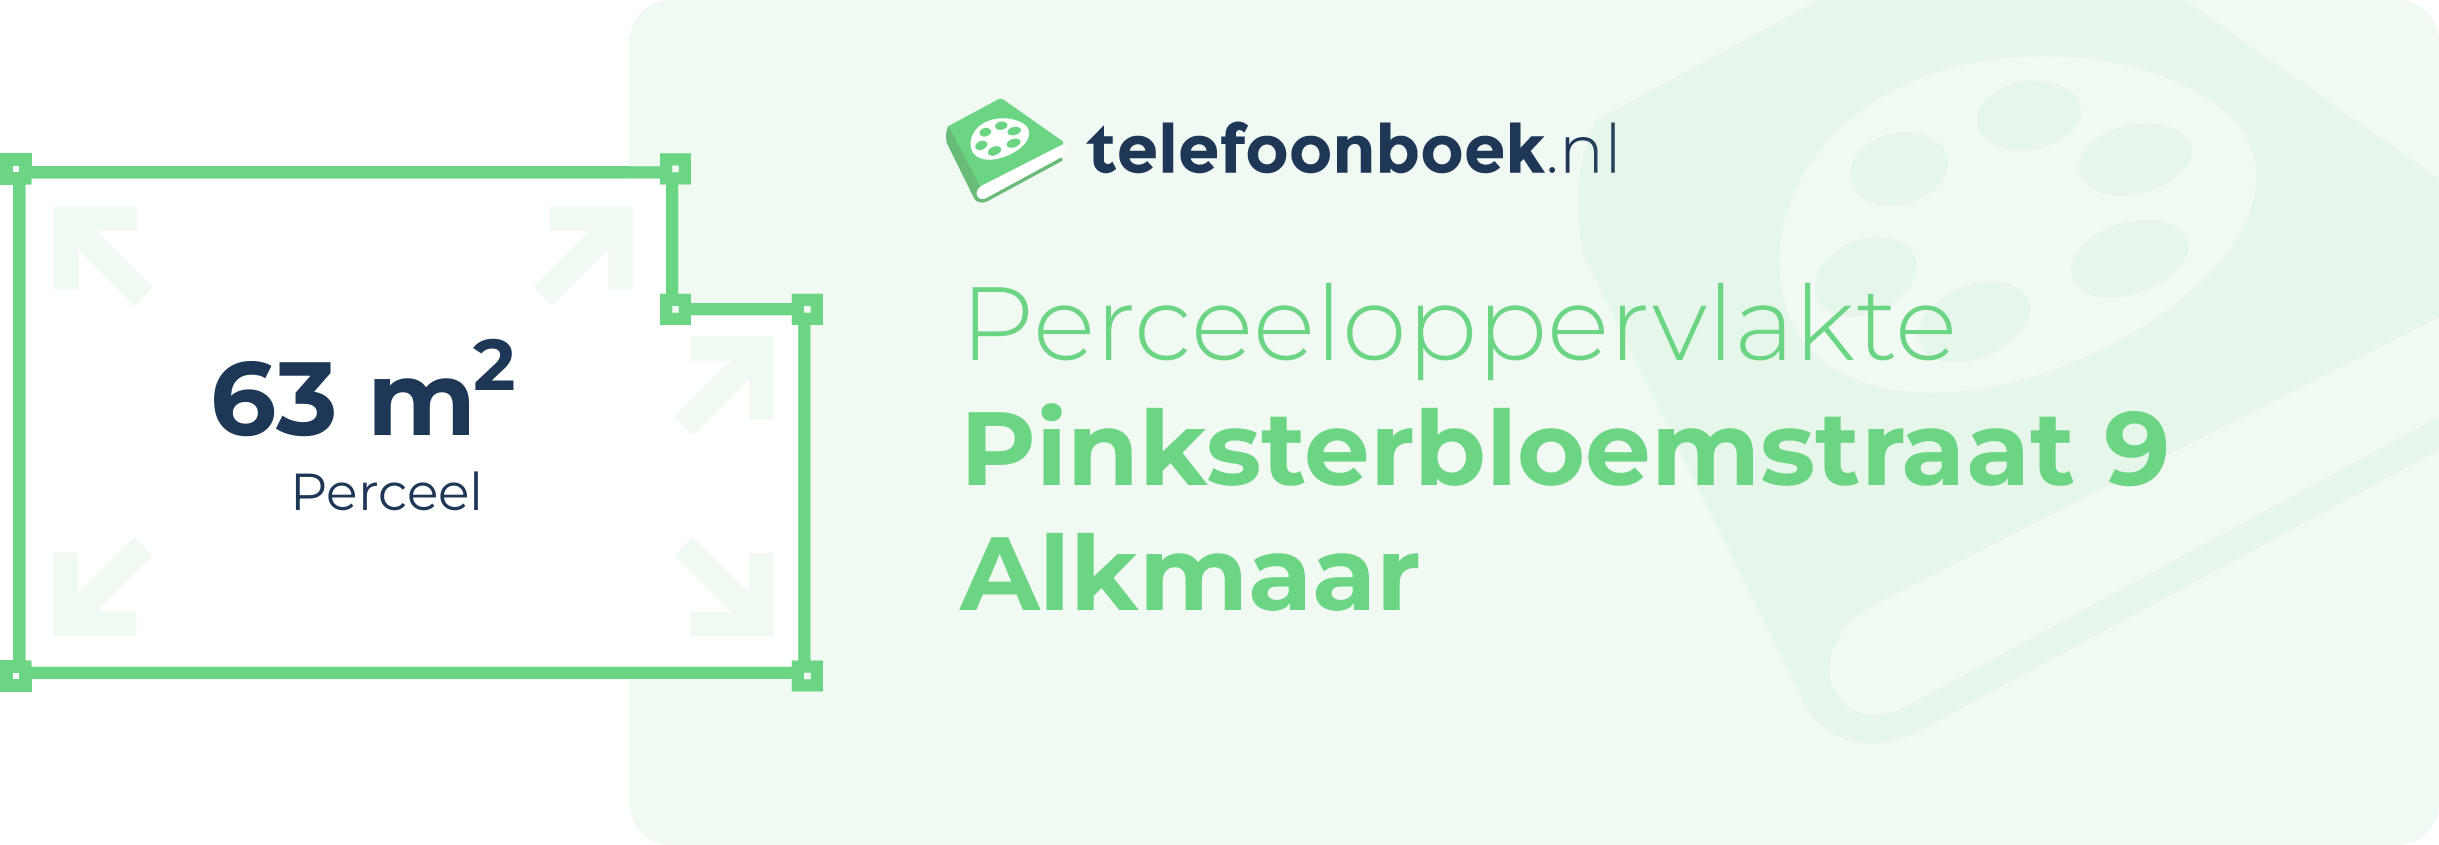 Perceeloppervlakte Pinksterbloemstraat 9 Alkmaar